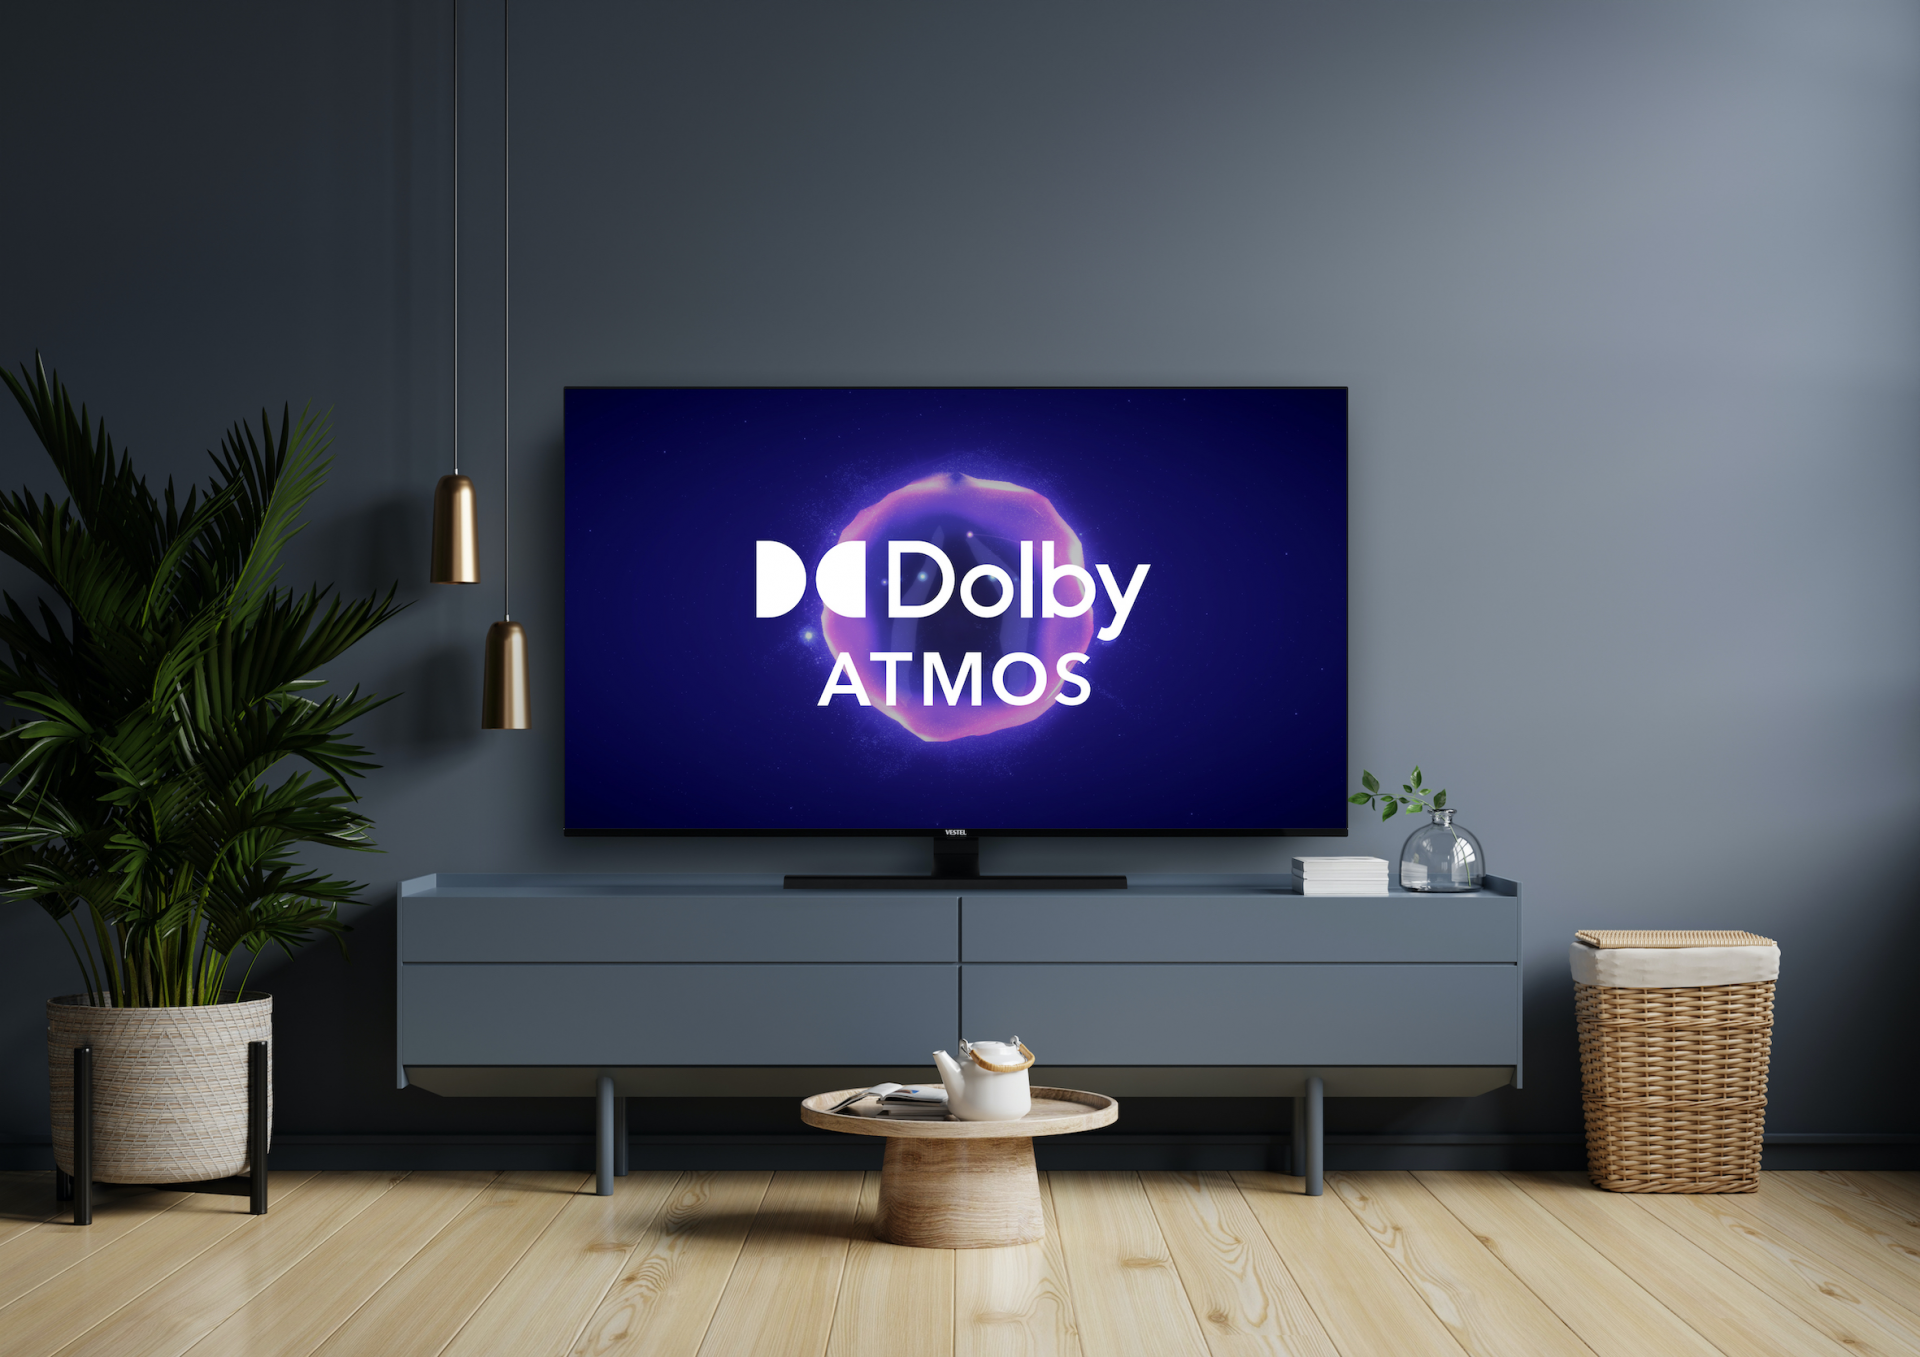 Vestel stattet mehr TV-Modelle mit Dolby Atmos aus